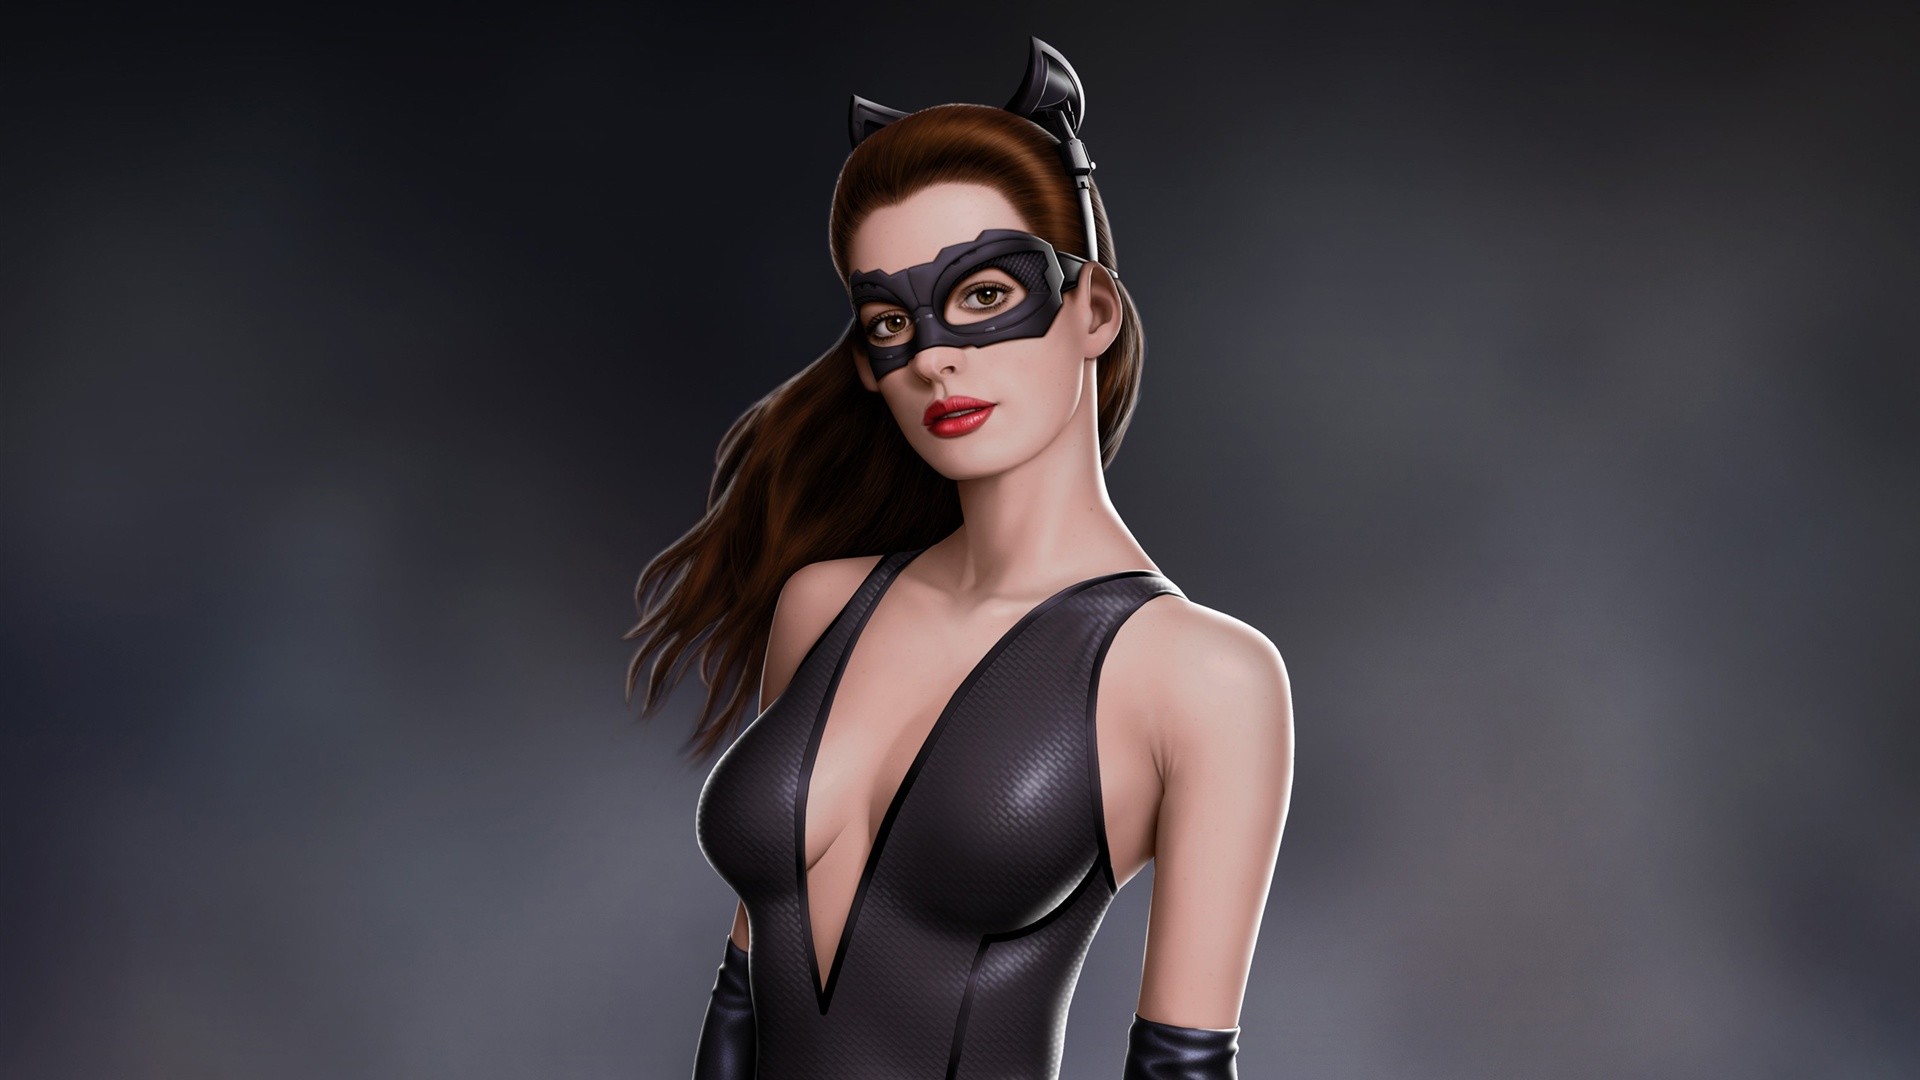 Anne Hathaway in Batman movie as catwoman Wallpaper, Desktop